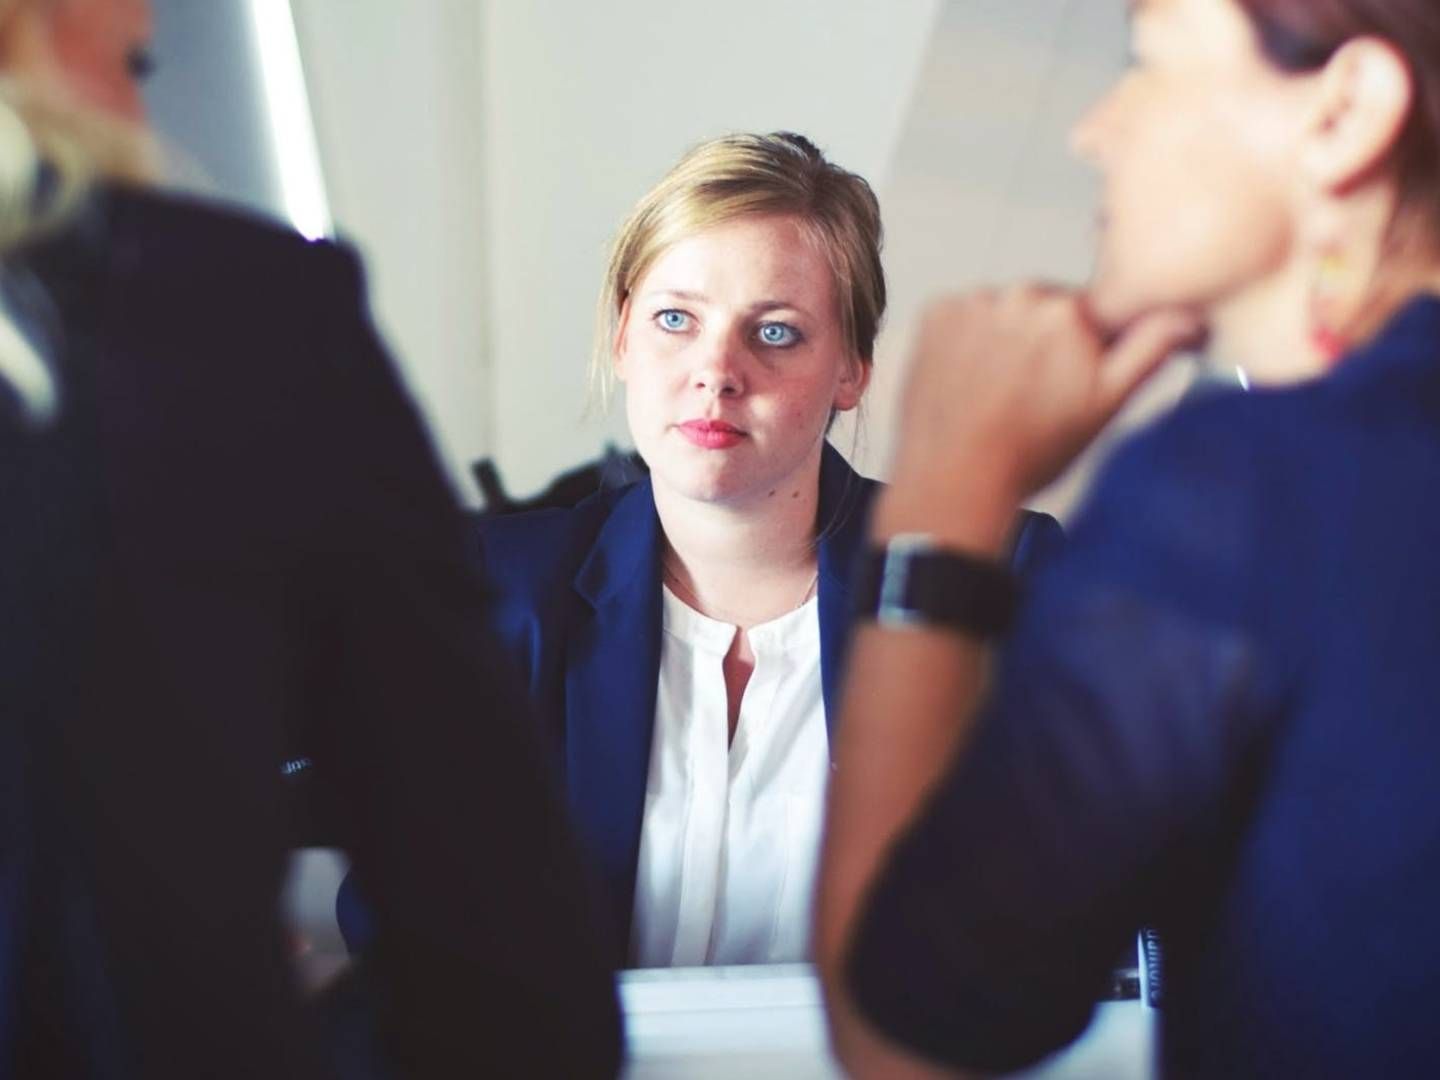 Antallet af dimittender på CBS’ bestyrelsesuddannelser viser, at kvinder har interesse for bestyrelsesarbejde. Modelfoto. | Foto: Pexels.com